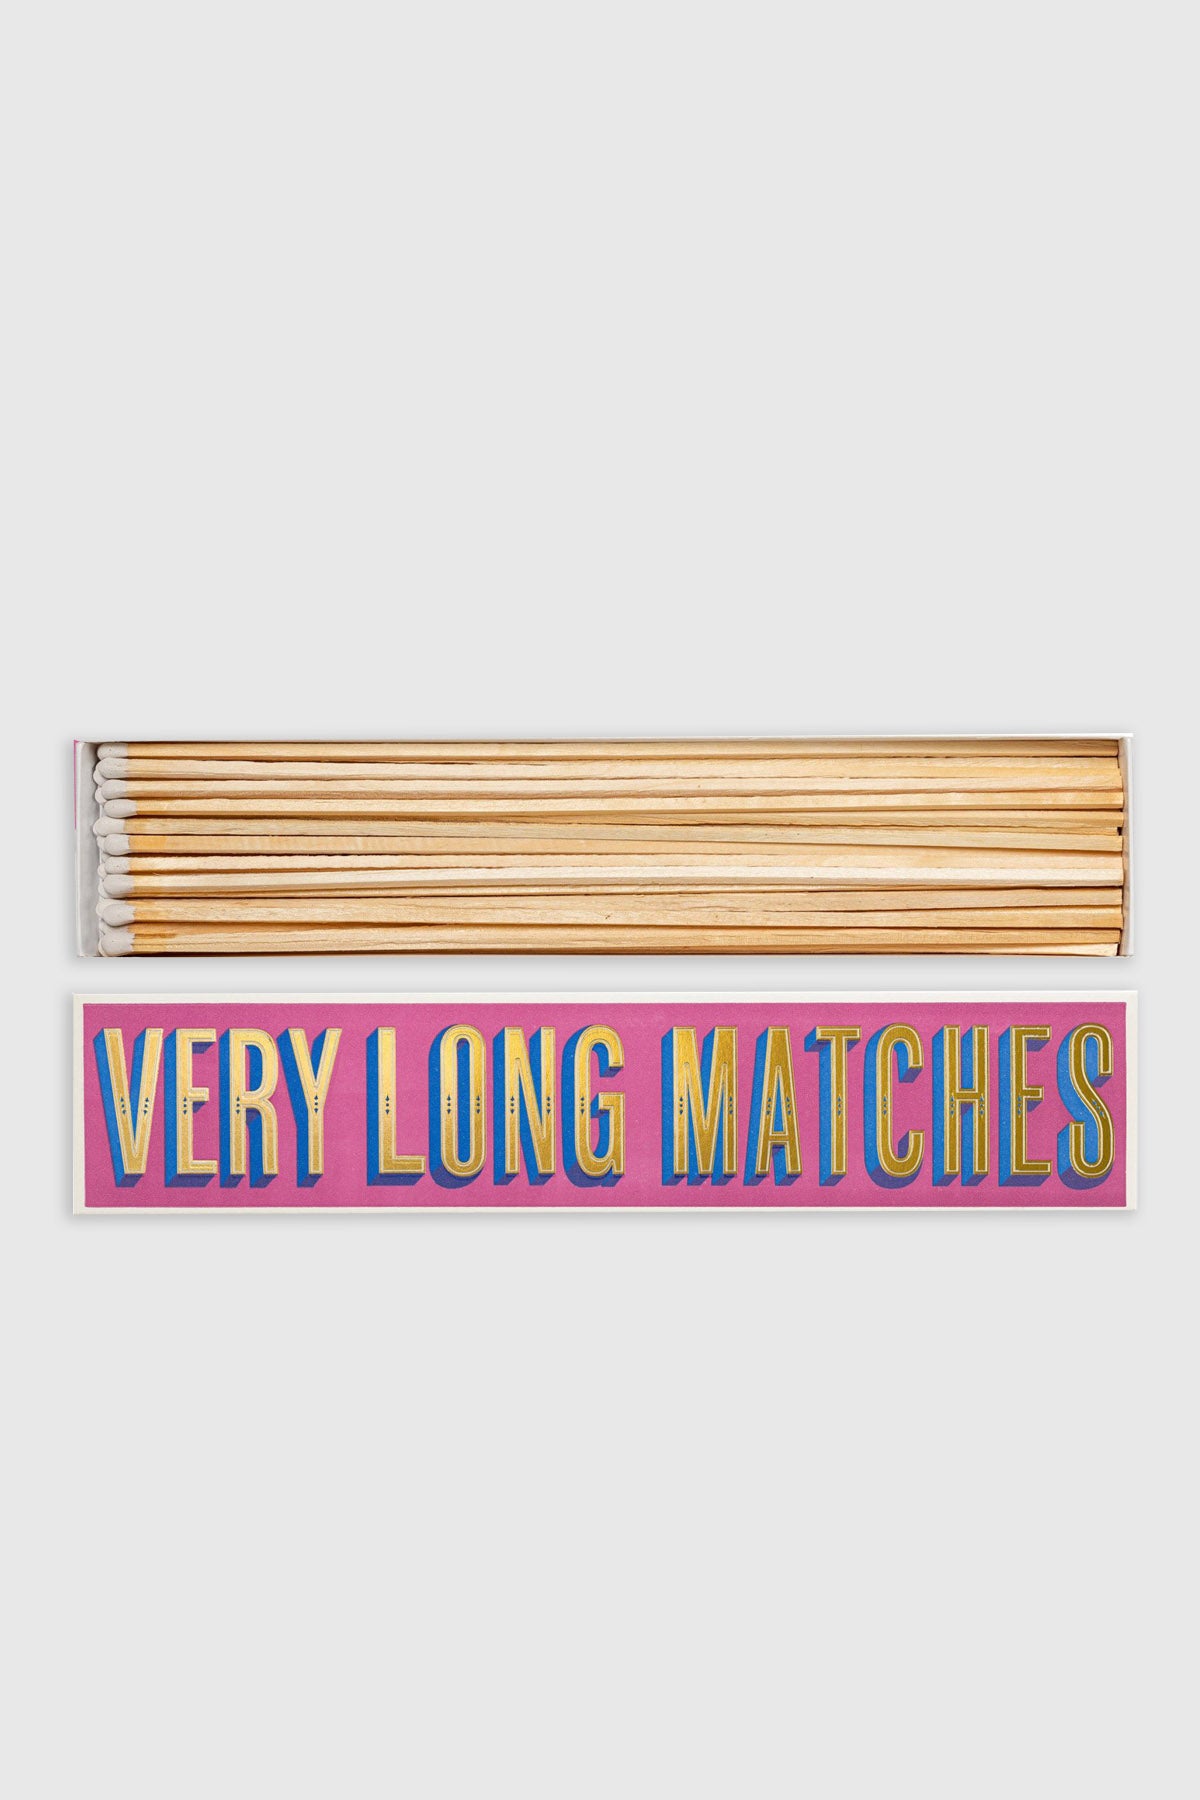 Matchbox "Very Long Matches"